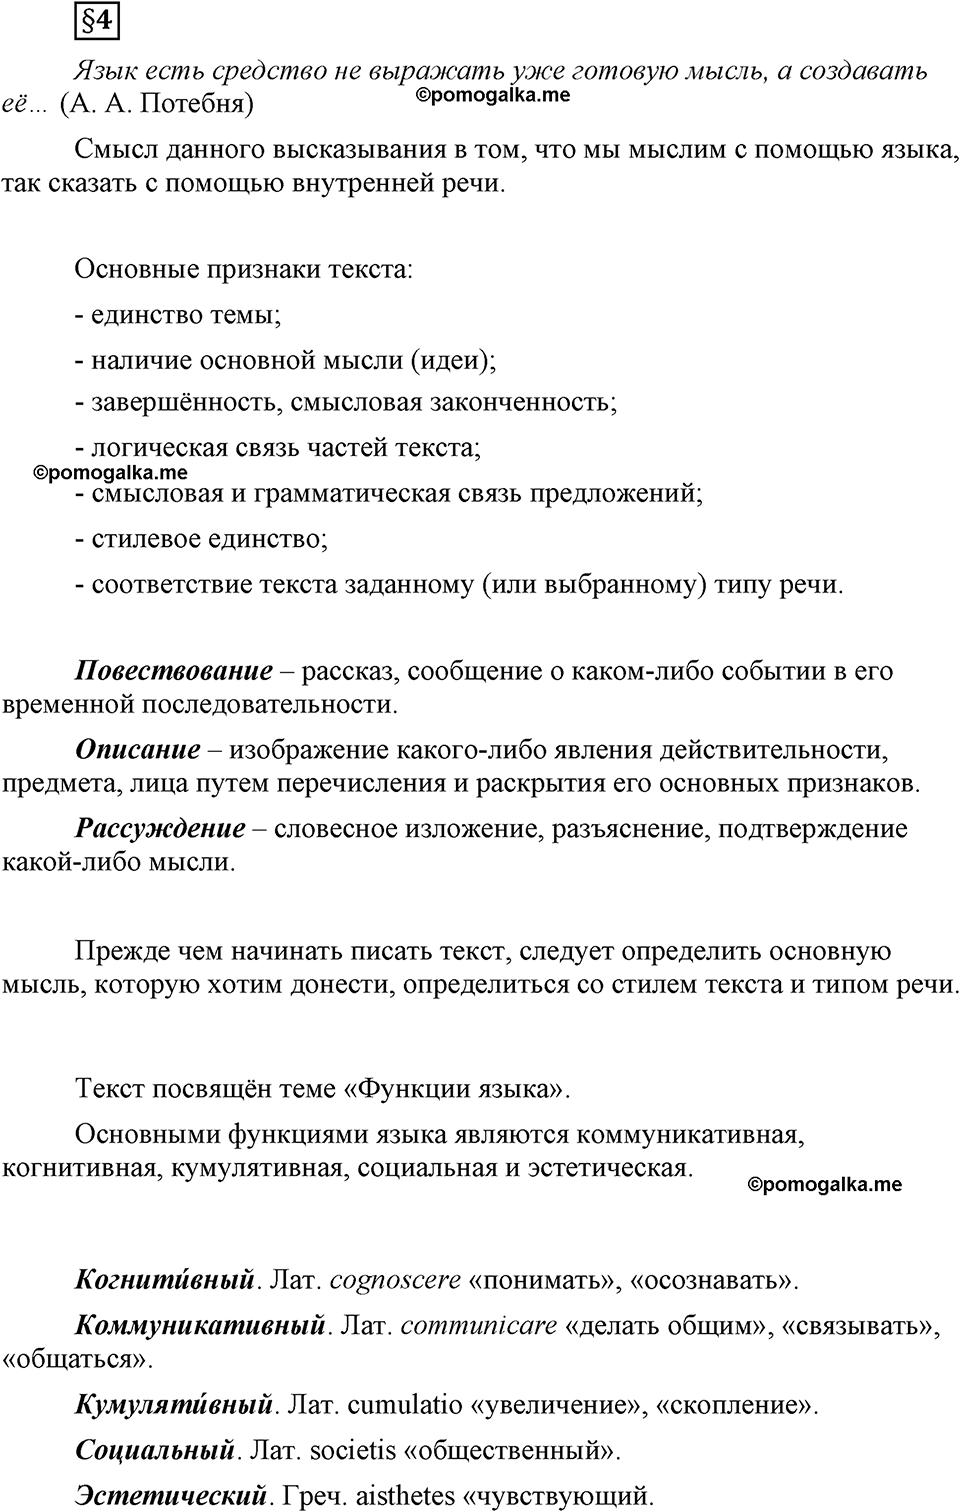 страница 31 вопросы к §4 русский язык 8 класс Львова, Львов 2014 год